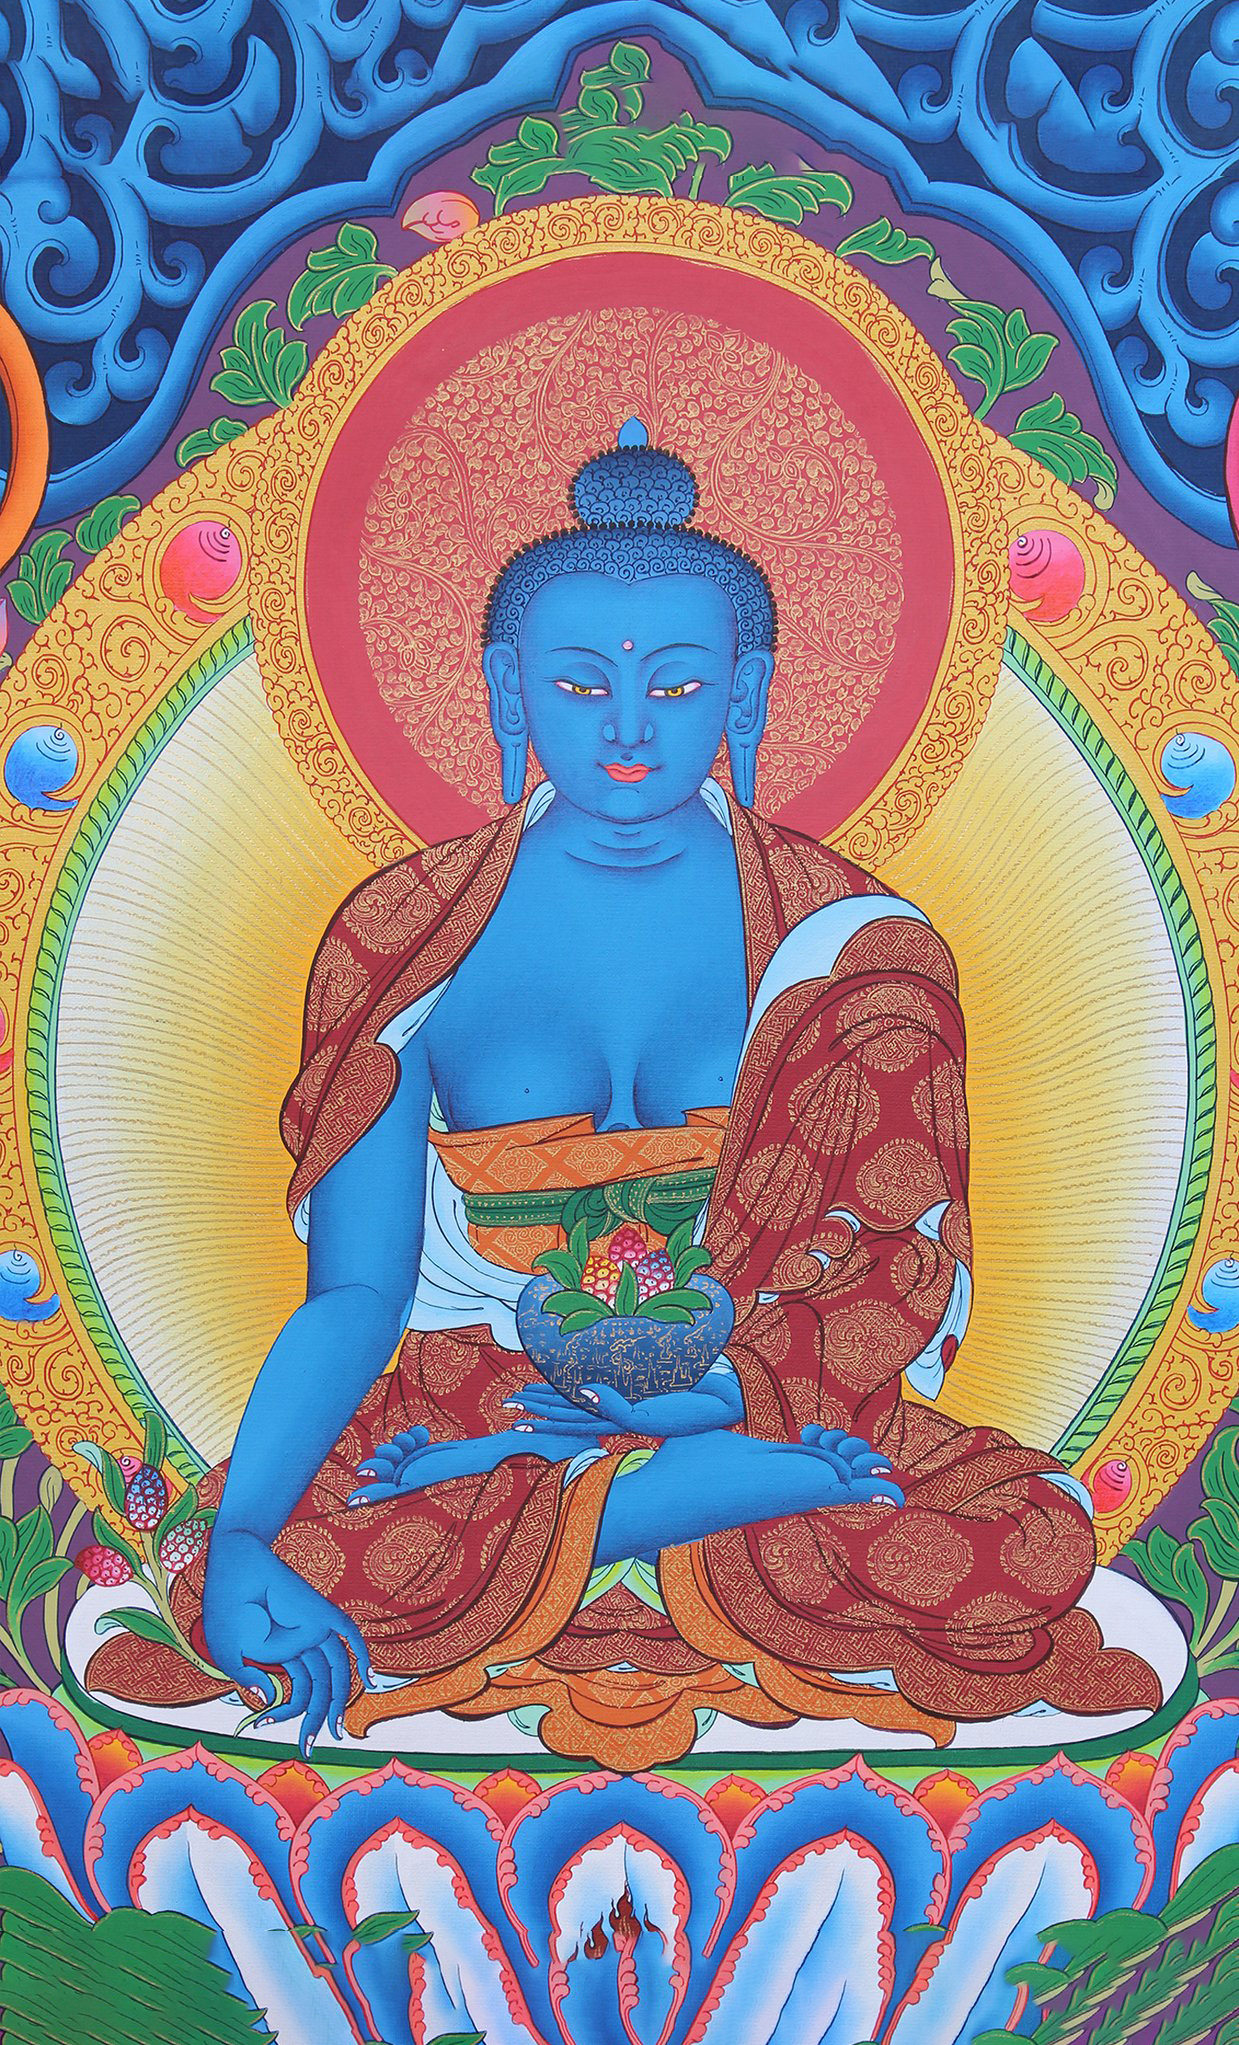 Hình ảnh Phật Dược Sư đẹp và trang nghiêm